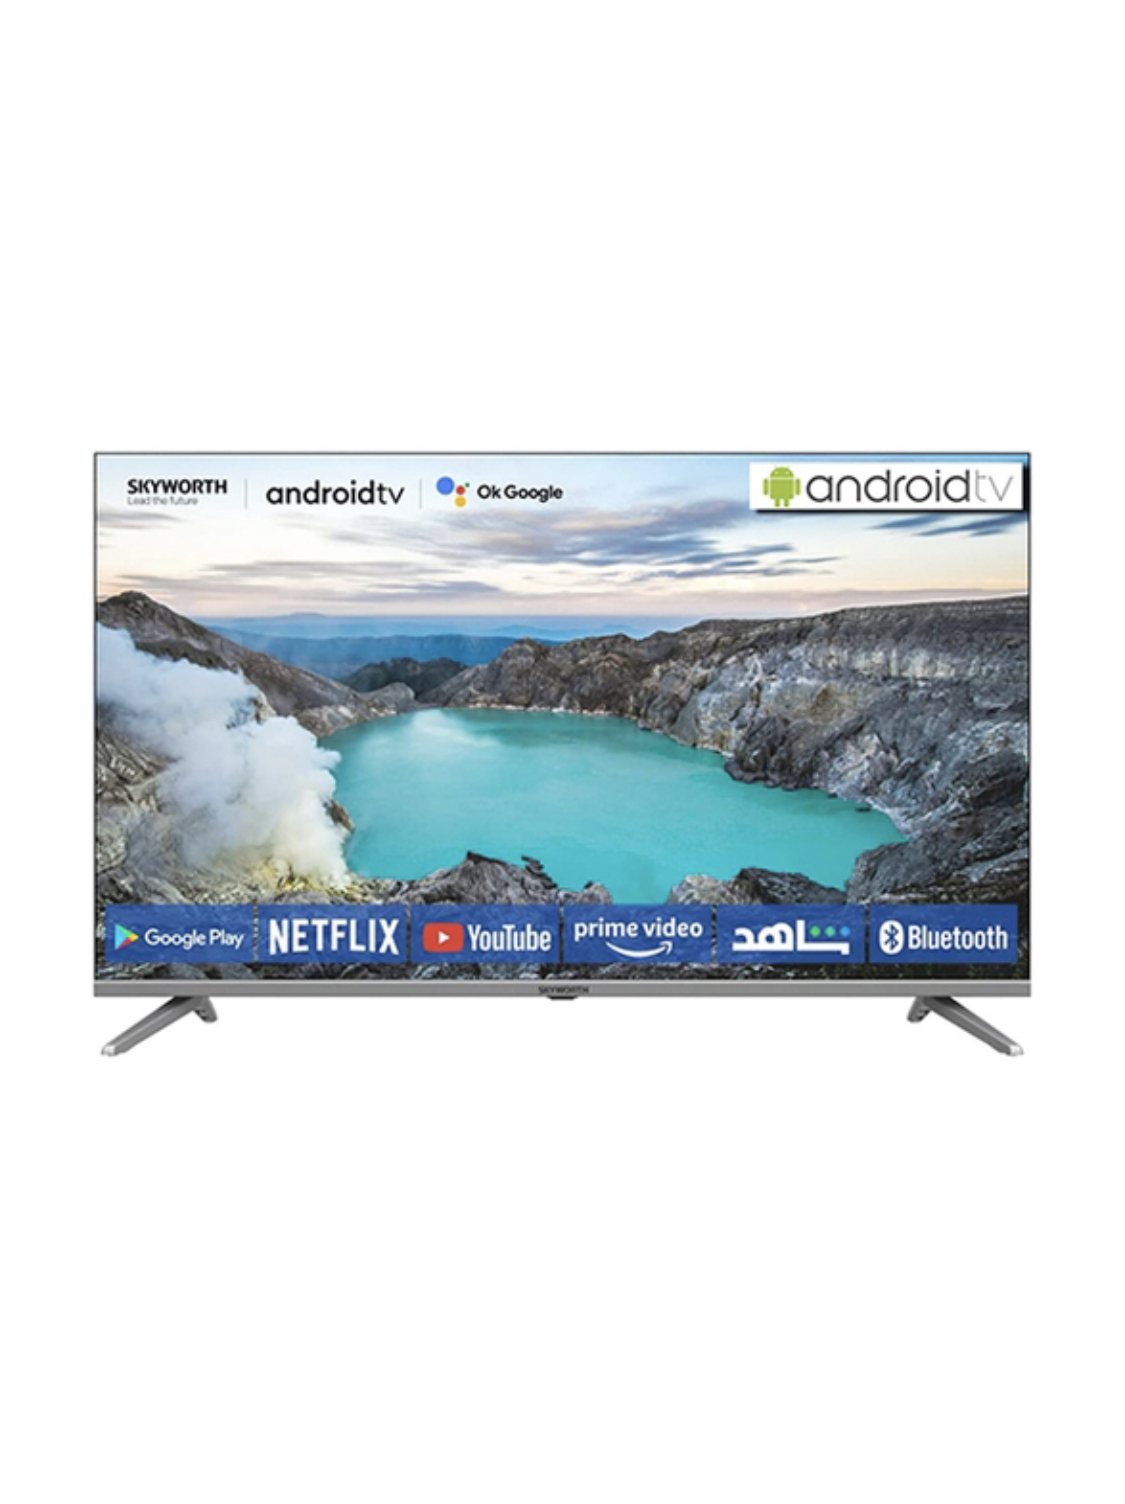 Skyworth 32 inch smart LED TV full HD (Brand new)